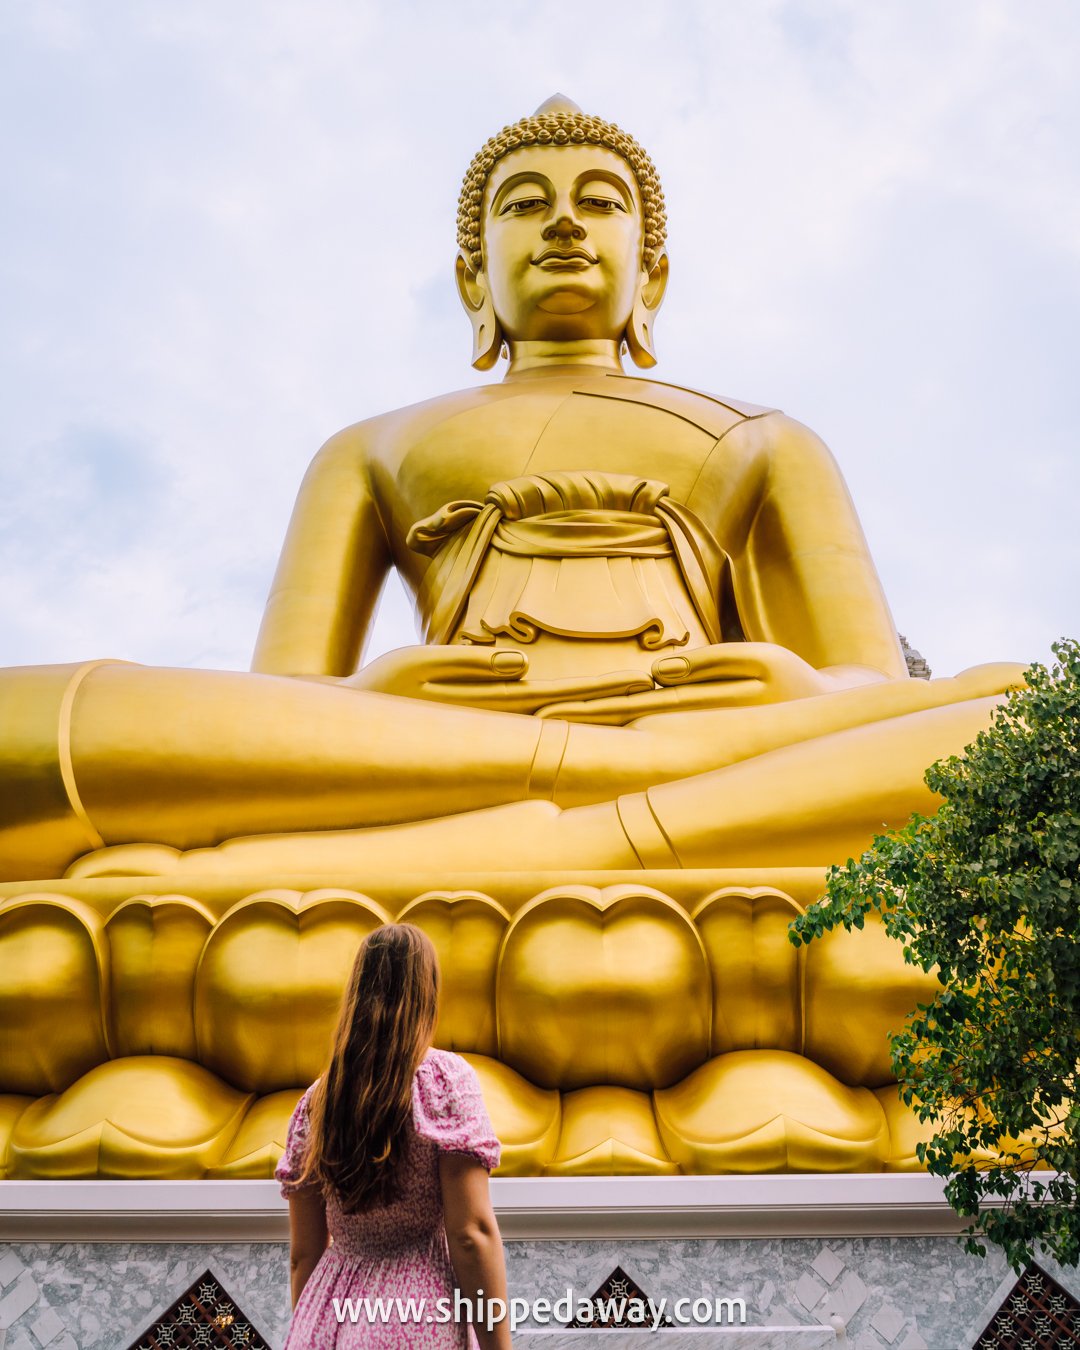 Big Golden Buddha, Wat Paknam Bhasicharoen, Bangkok, Thailand